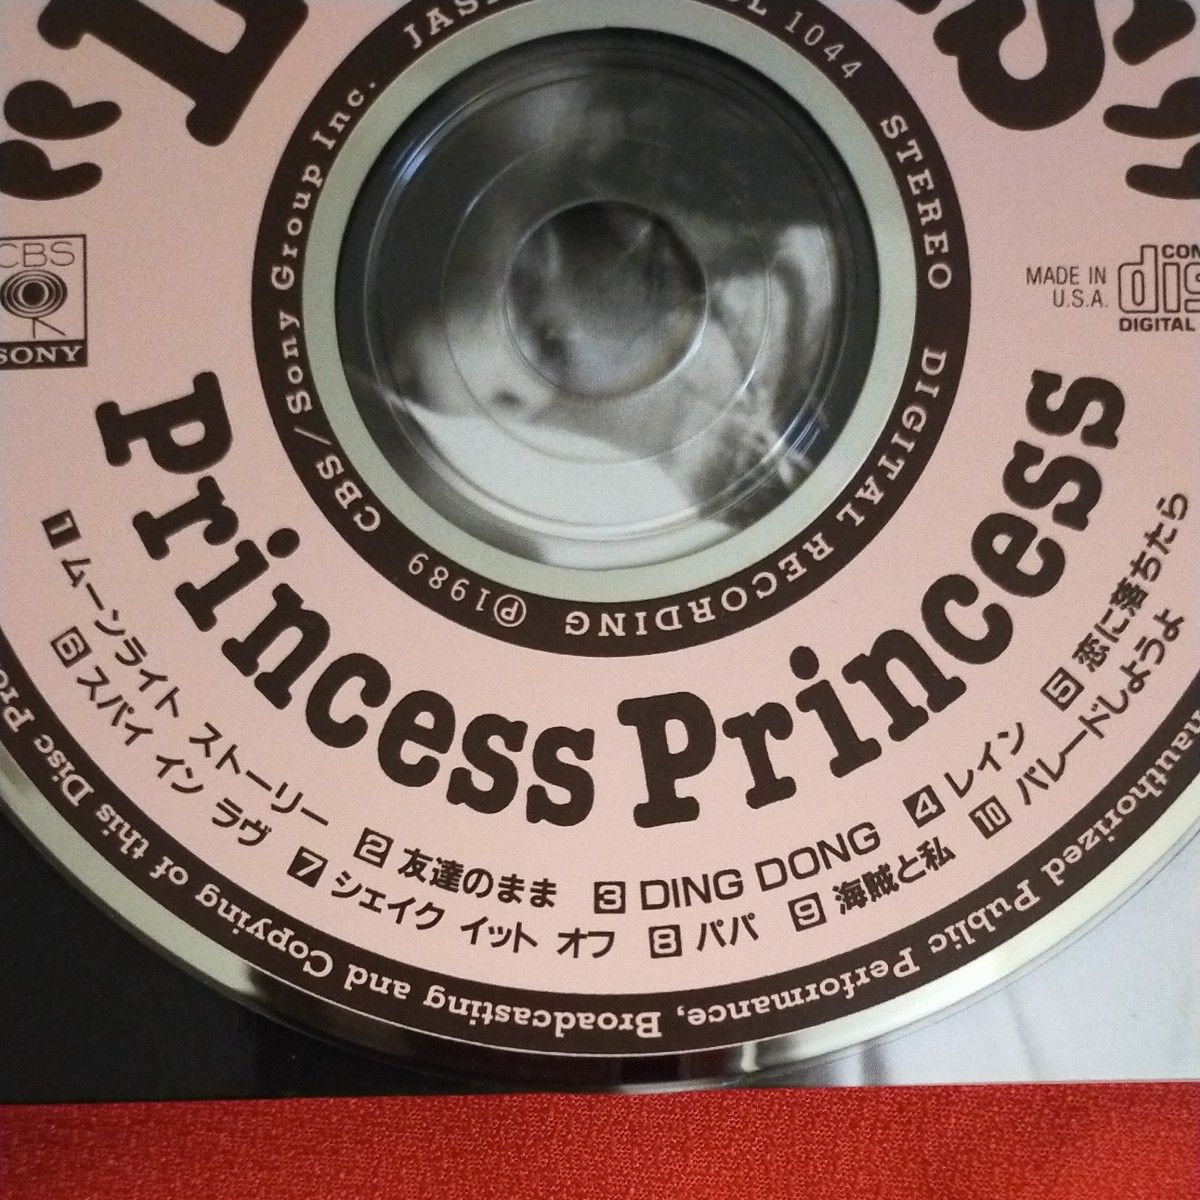 Lovers Princess Princess